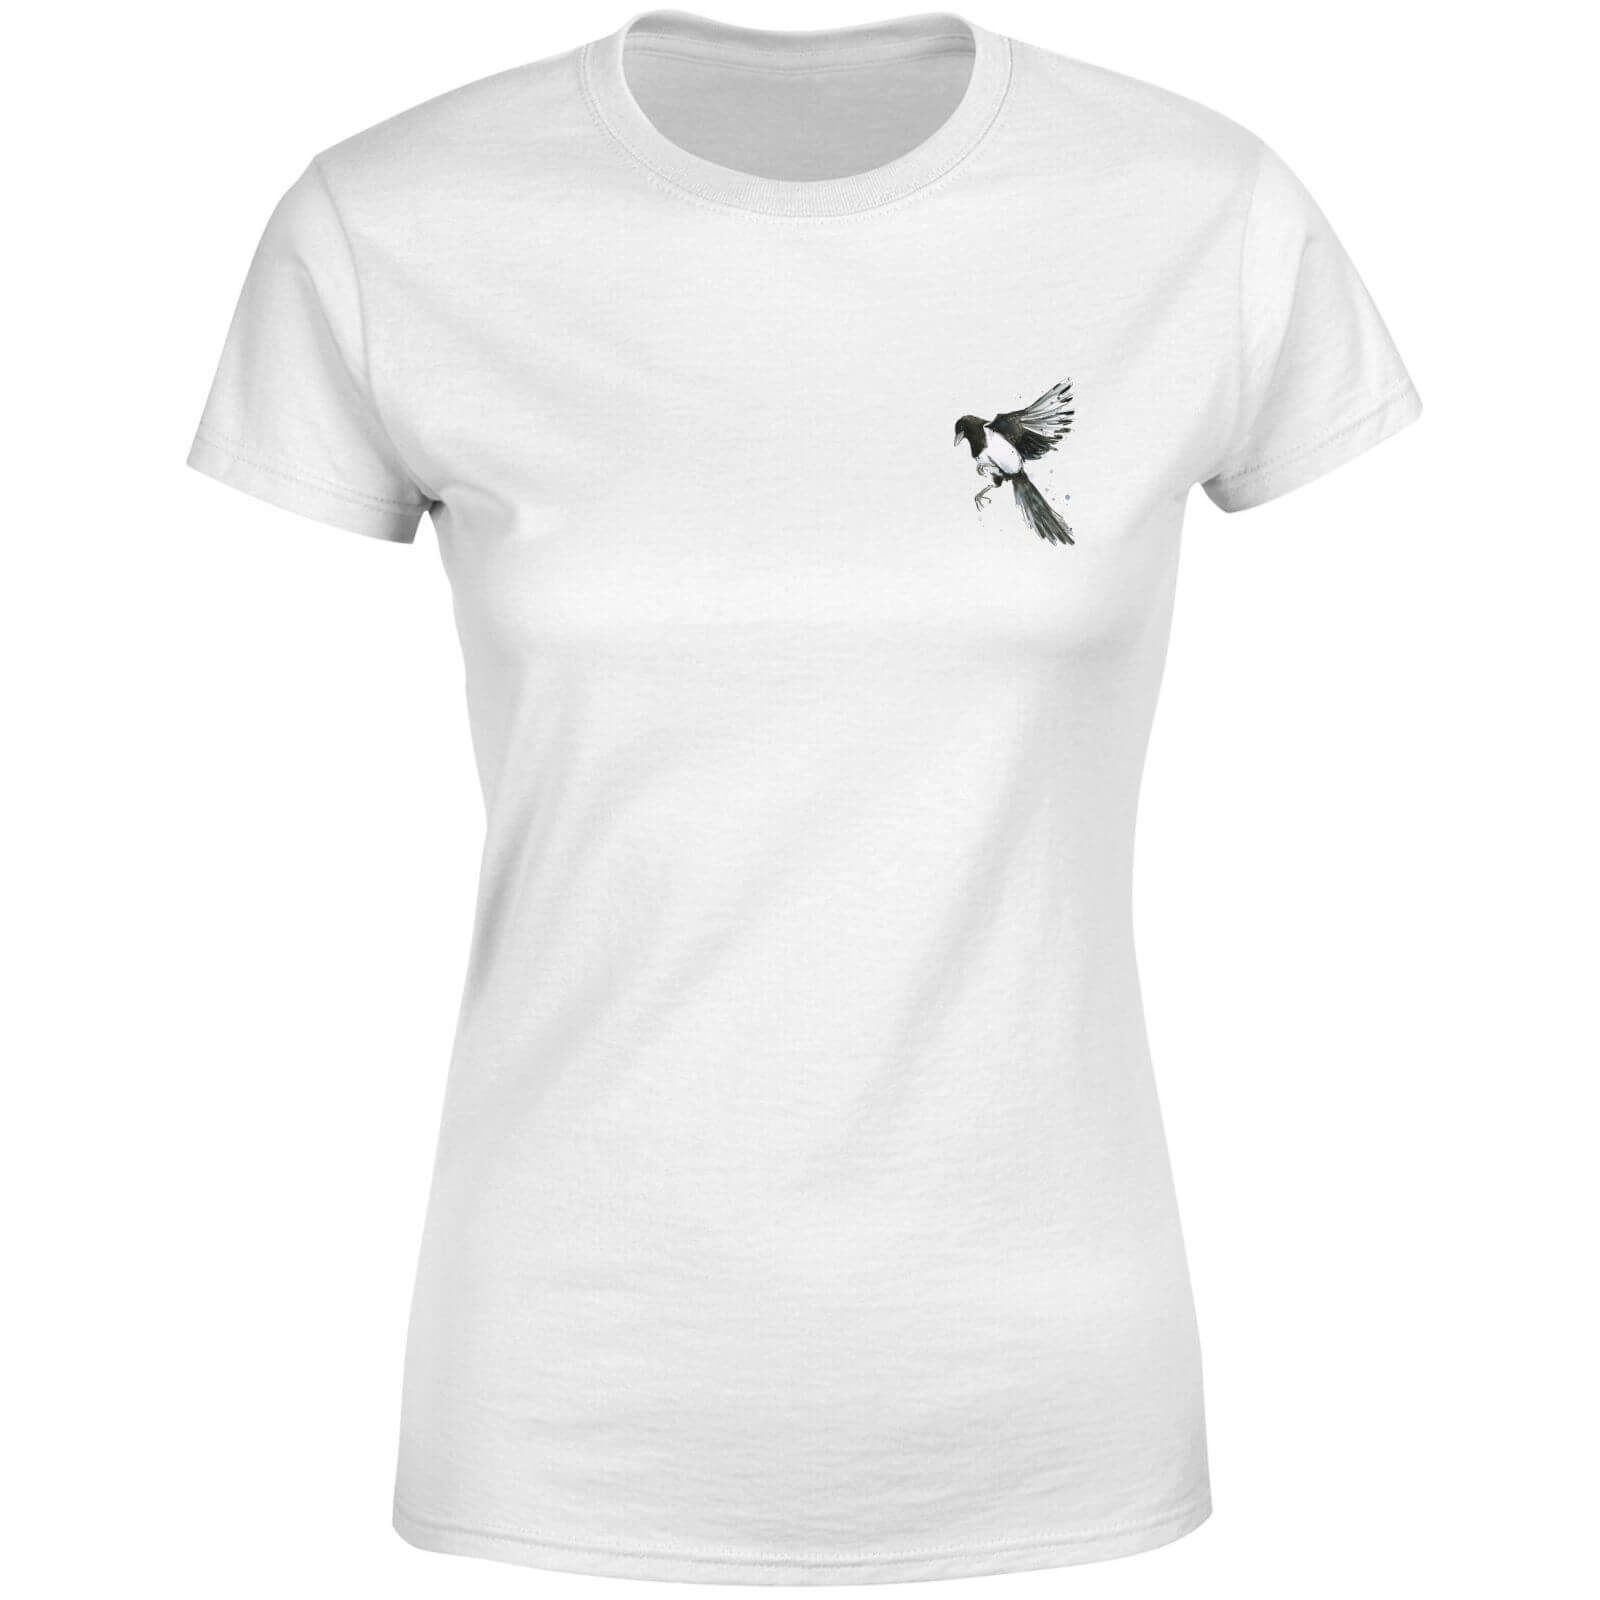 Snowtap Magpie Women's T-Shirt - White - S - White